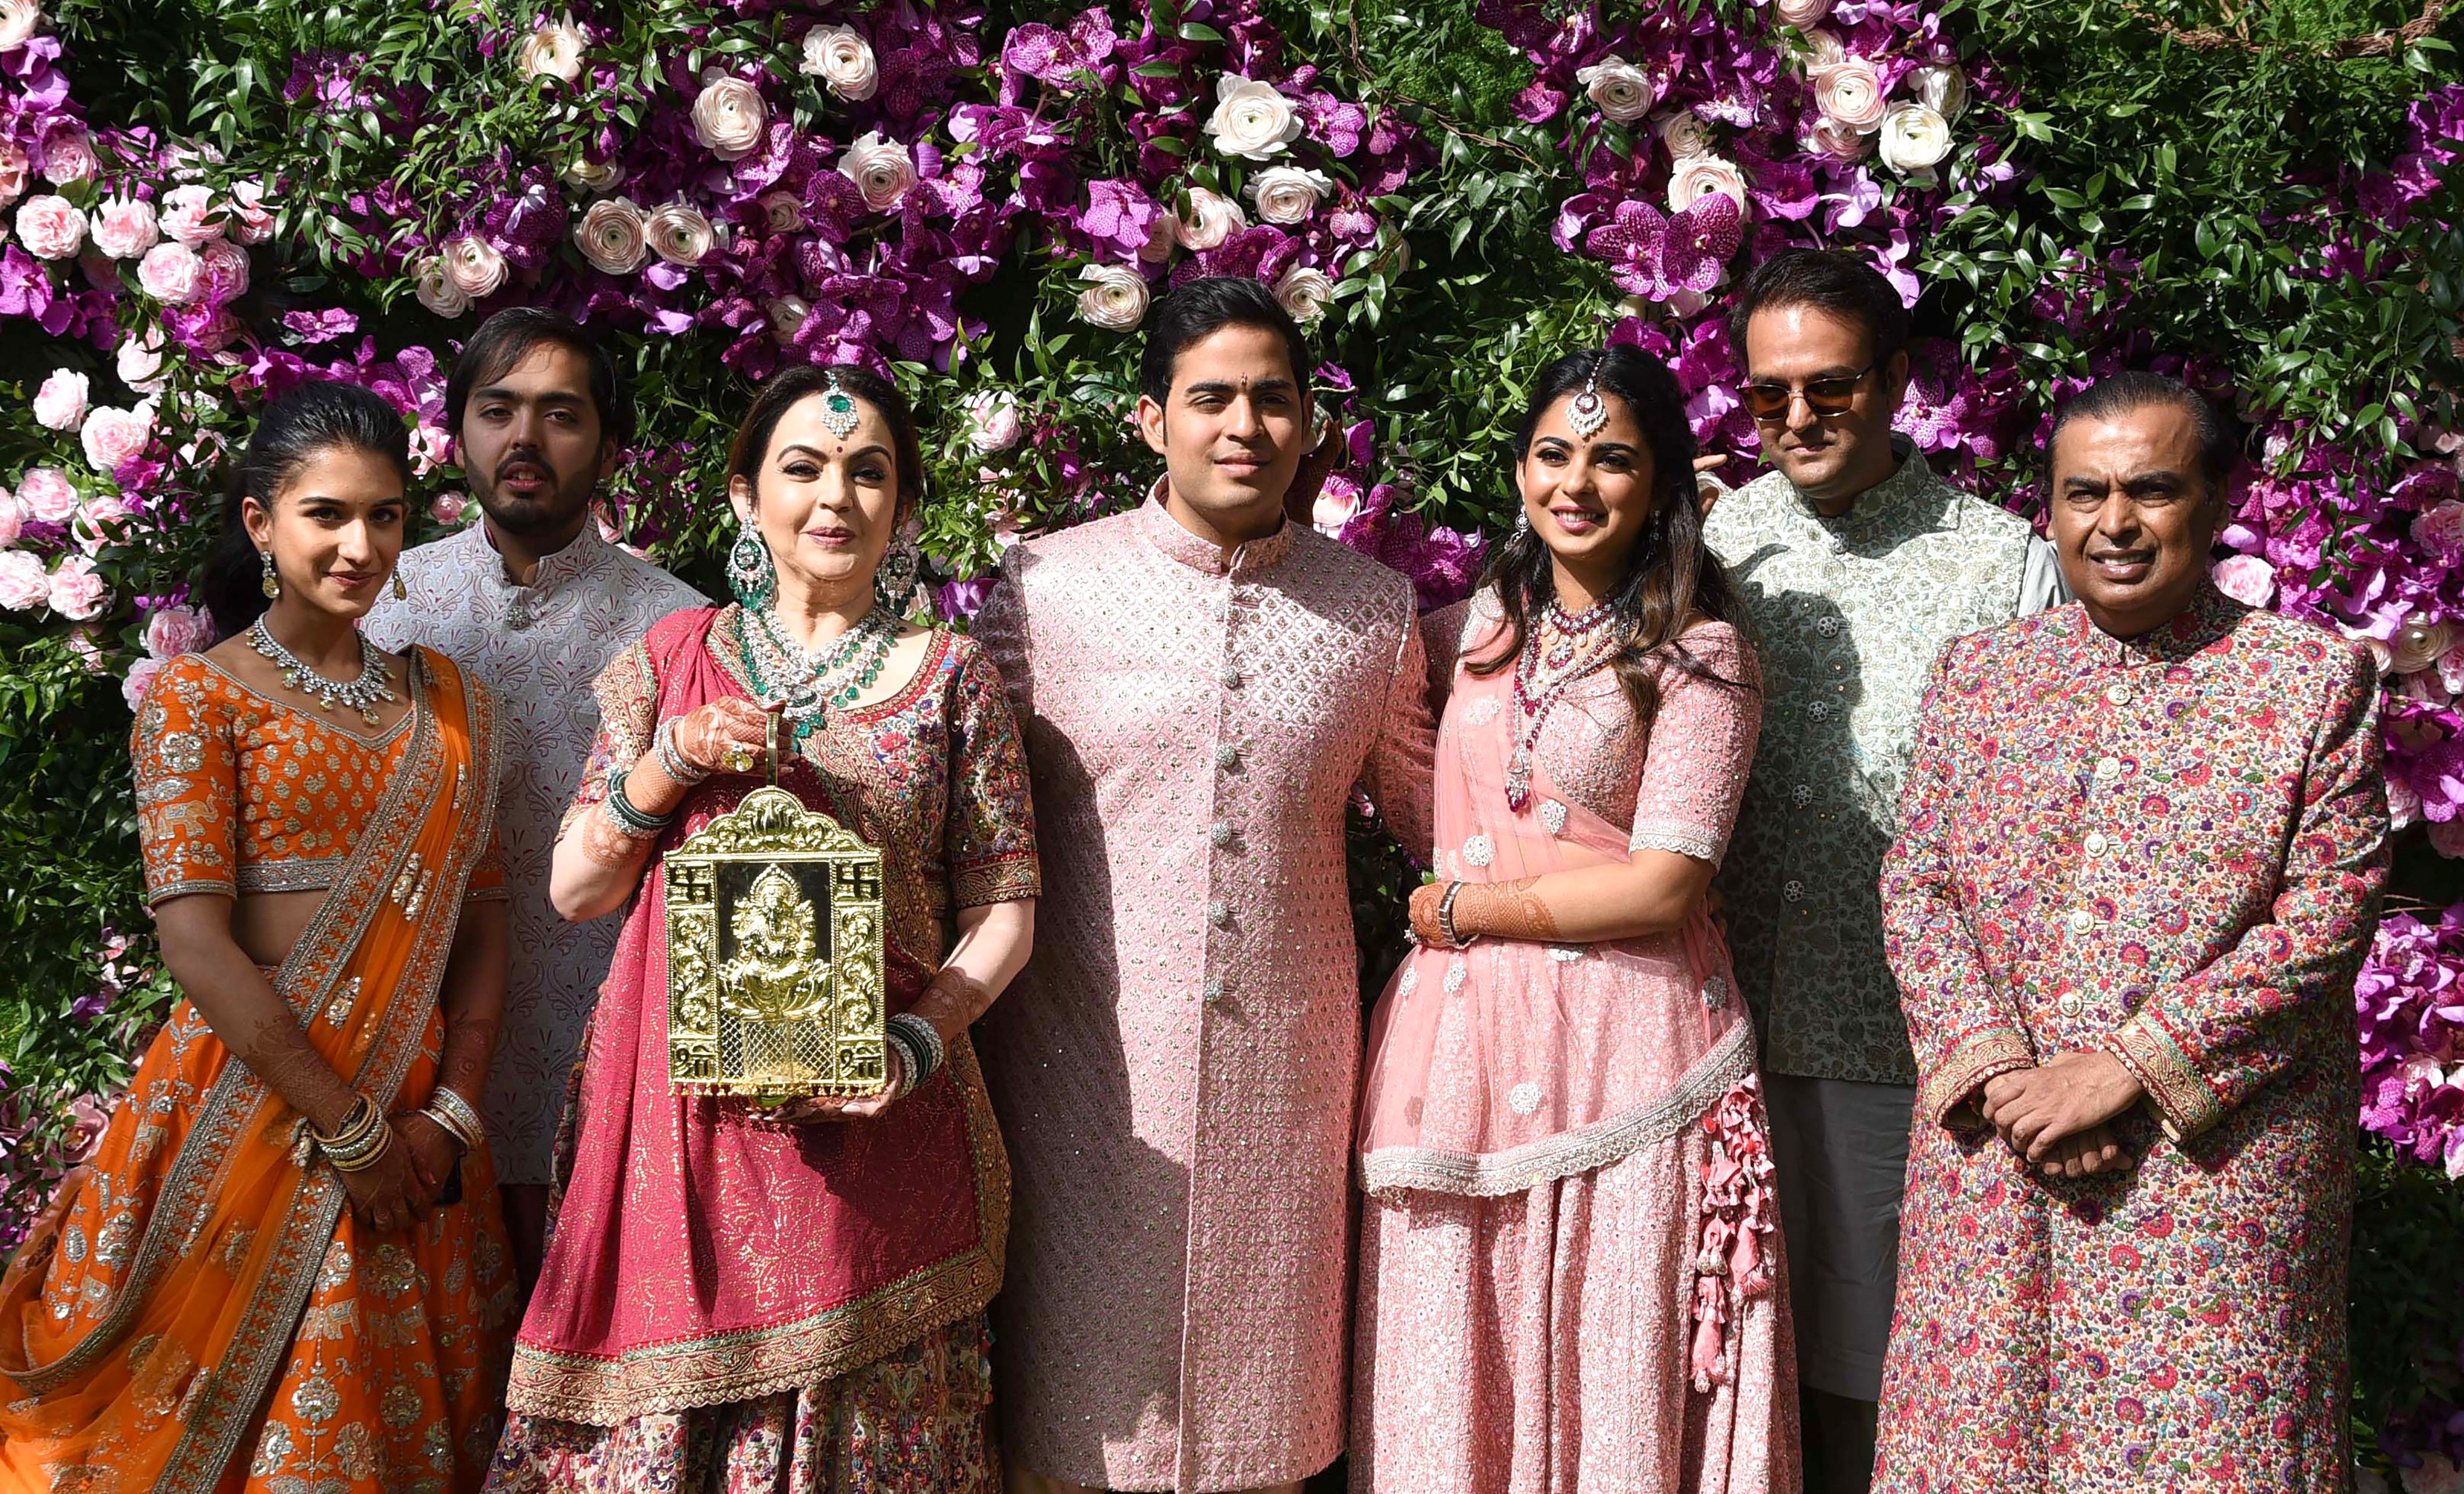 The Ambani family during the wedding ceremony of Akash Ambani in Mumbai on March 9, 2019 | Source: Getty Images